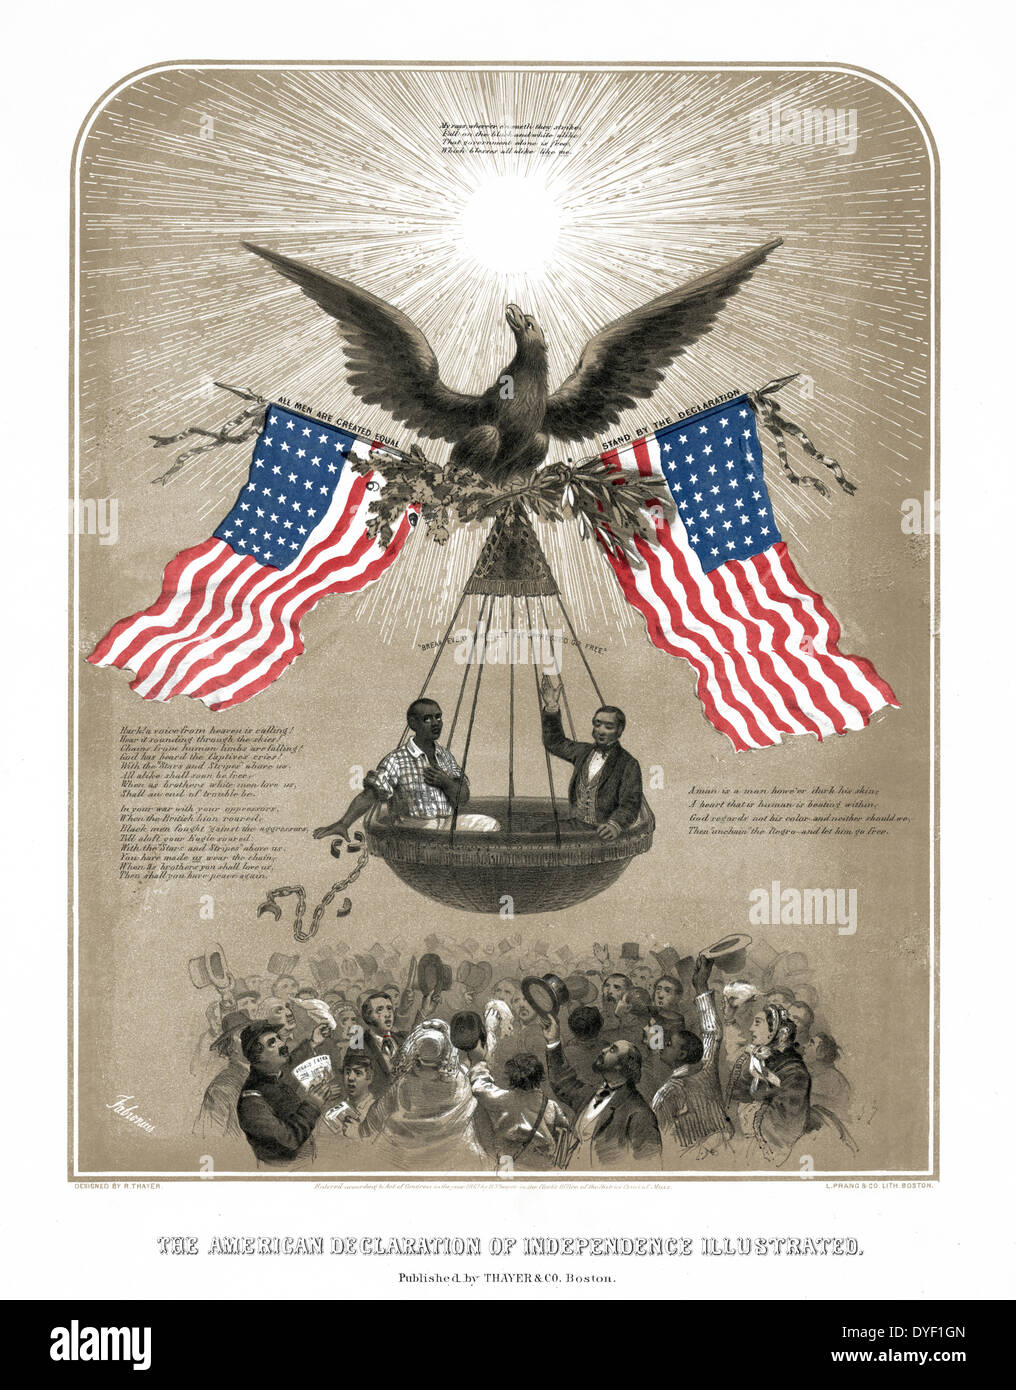 Die amerikanische Unabhängigkeitserklärung von Dominique Fabronius, Künstler c1861 illustriert. Stockfoto